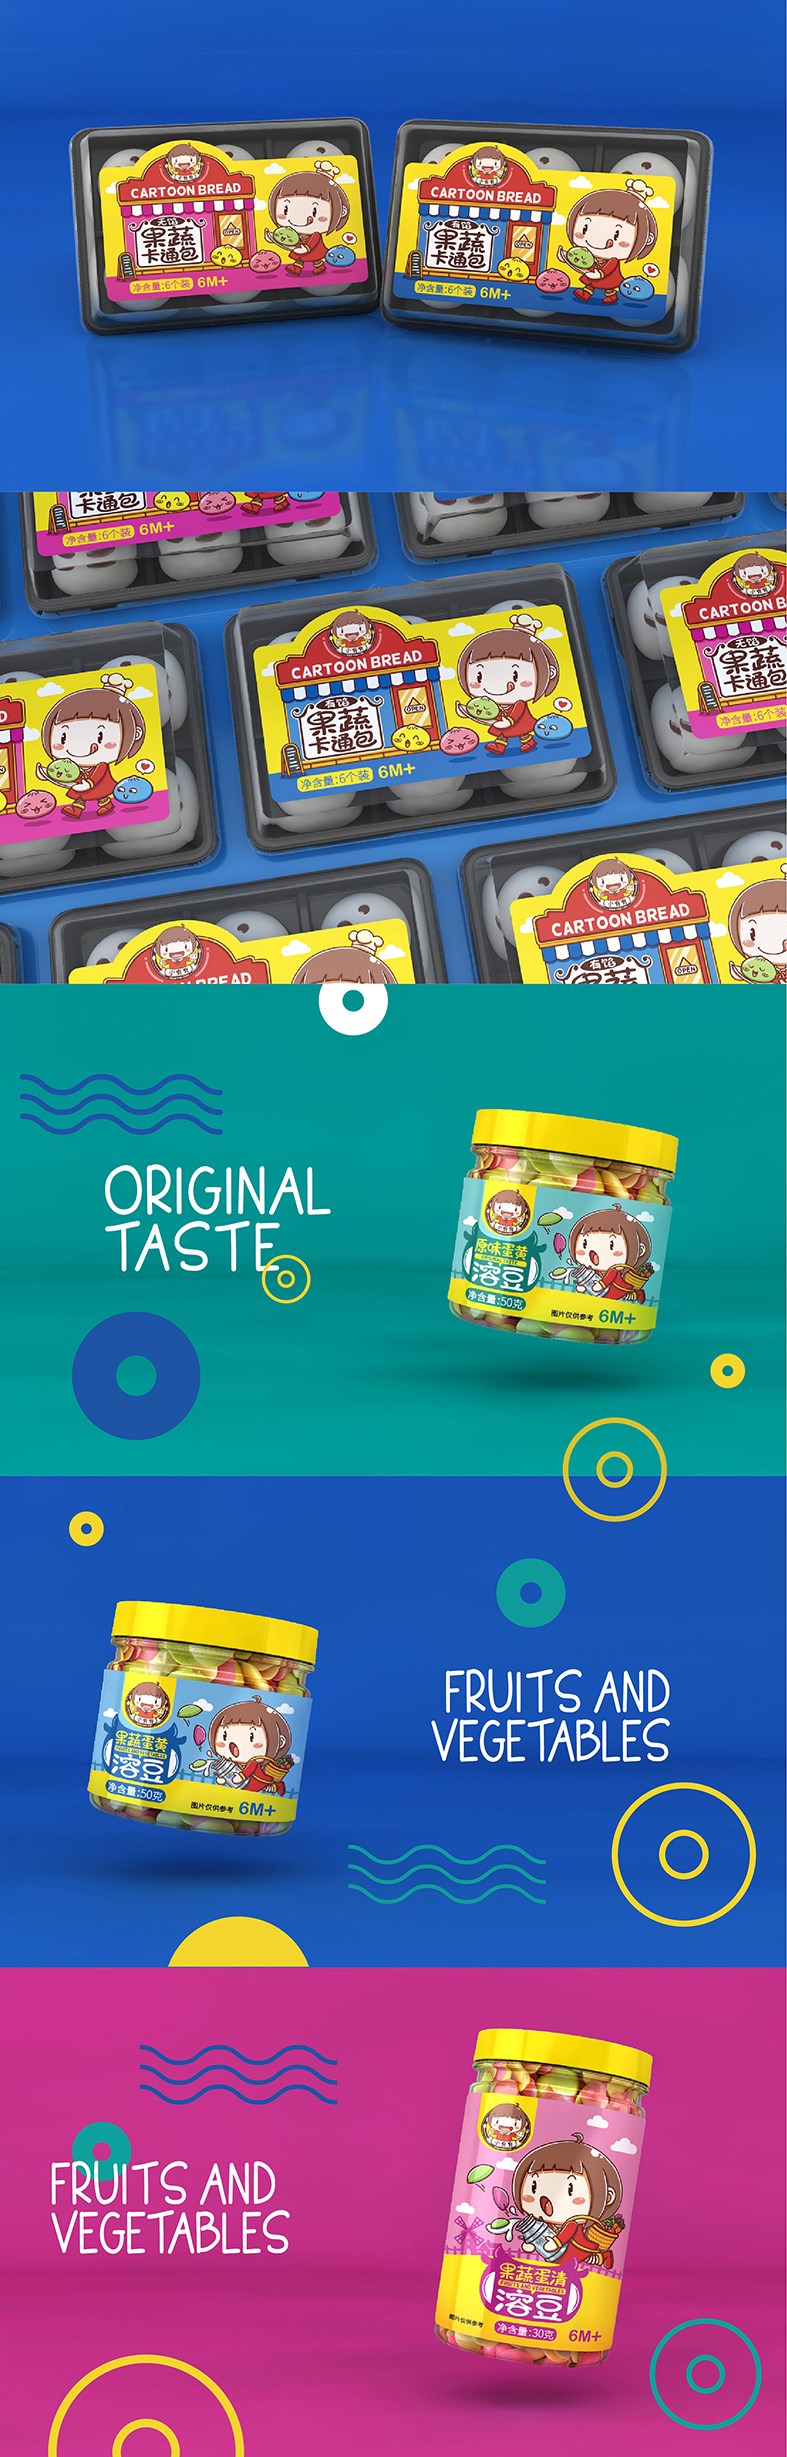 儿童辅食品牌-系列包装设计